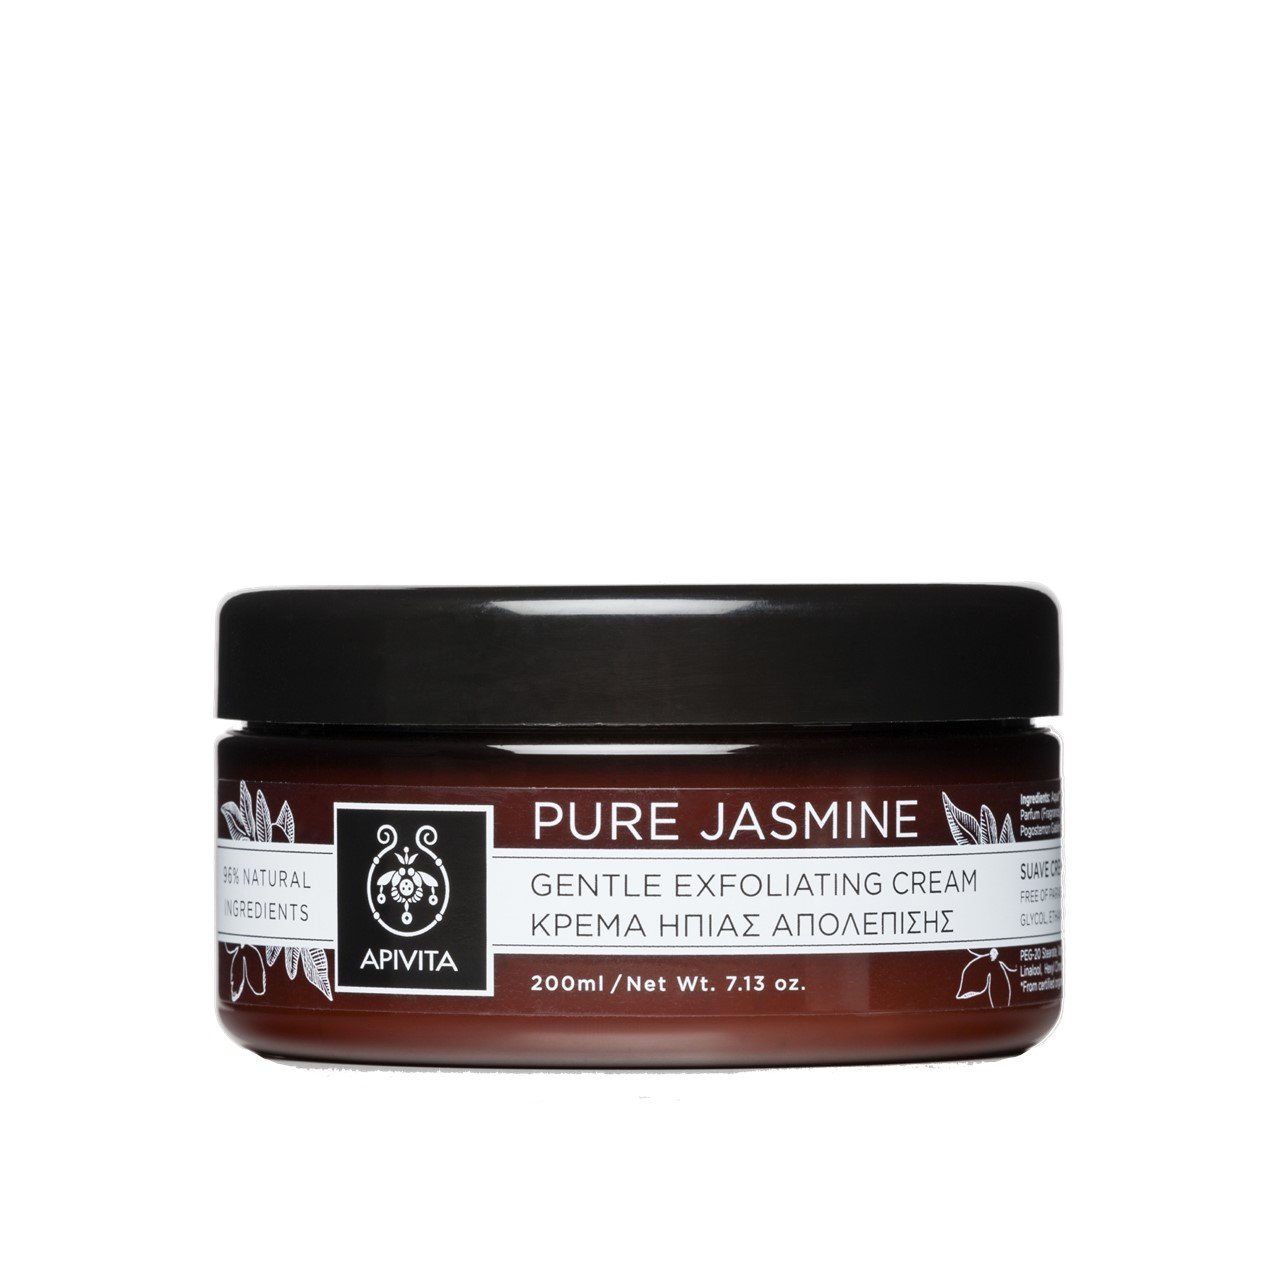 APIVITA Pure Jasmine Gentle Exfoliating Cream 200ml (6.76floz)